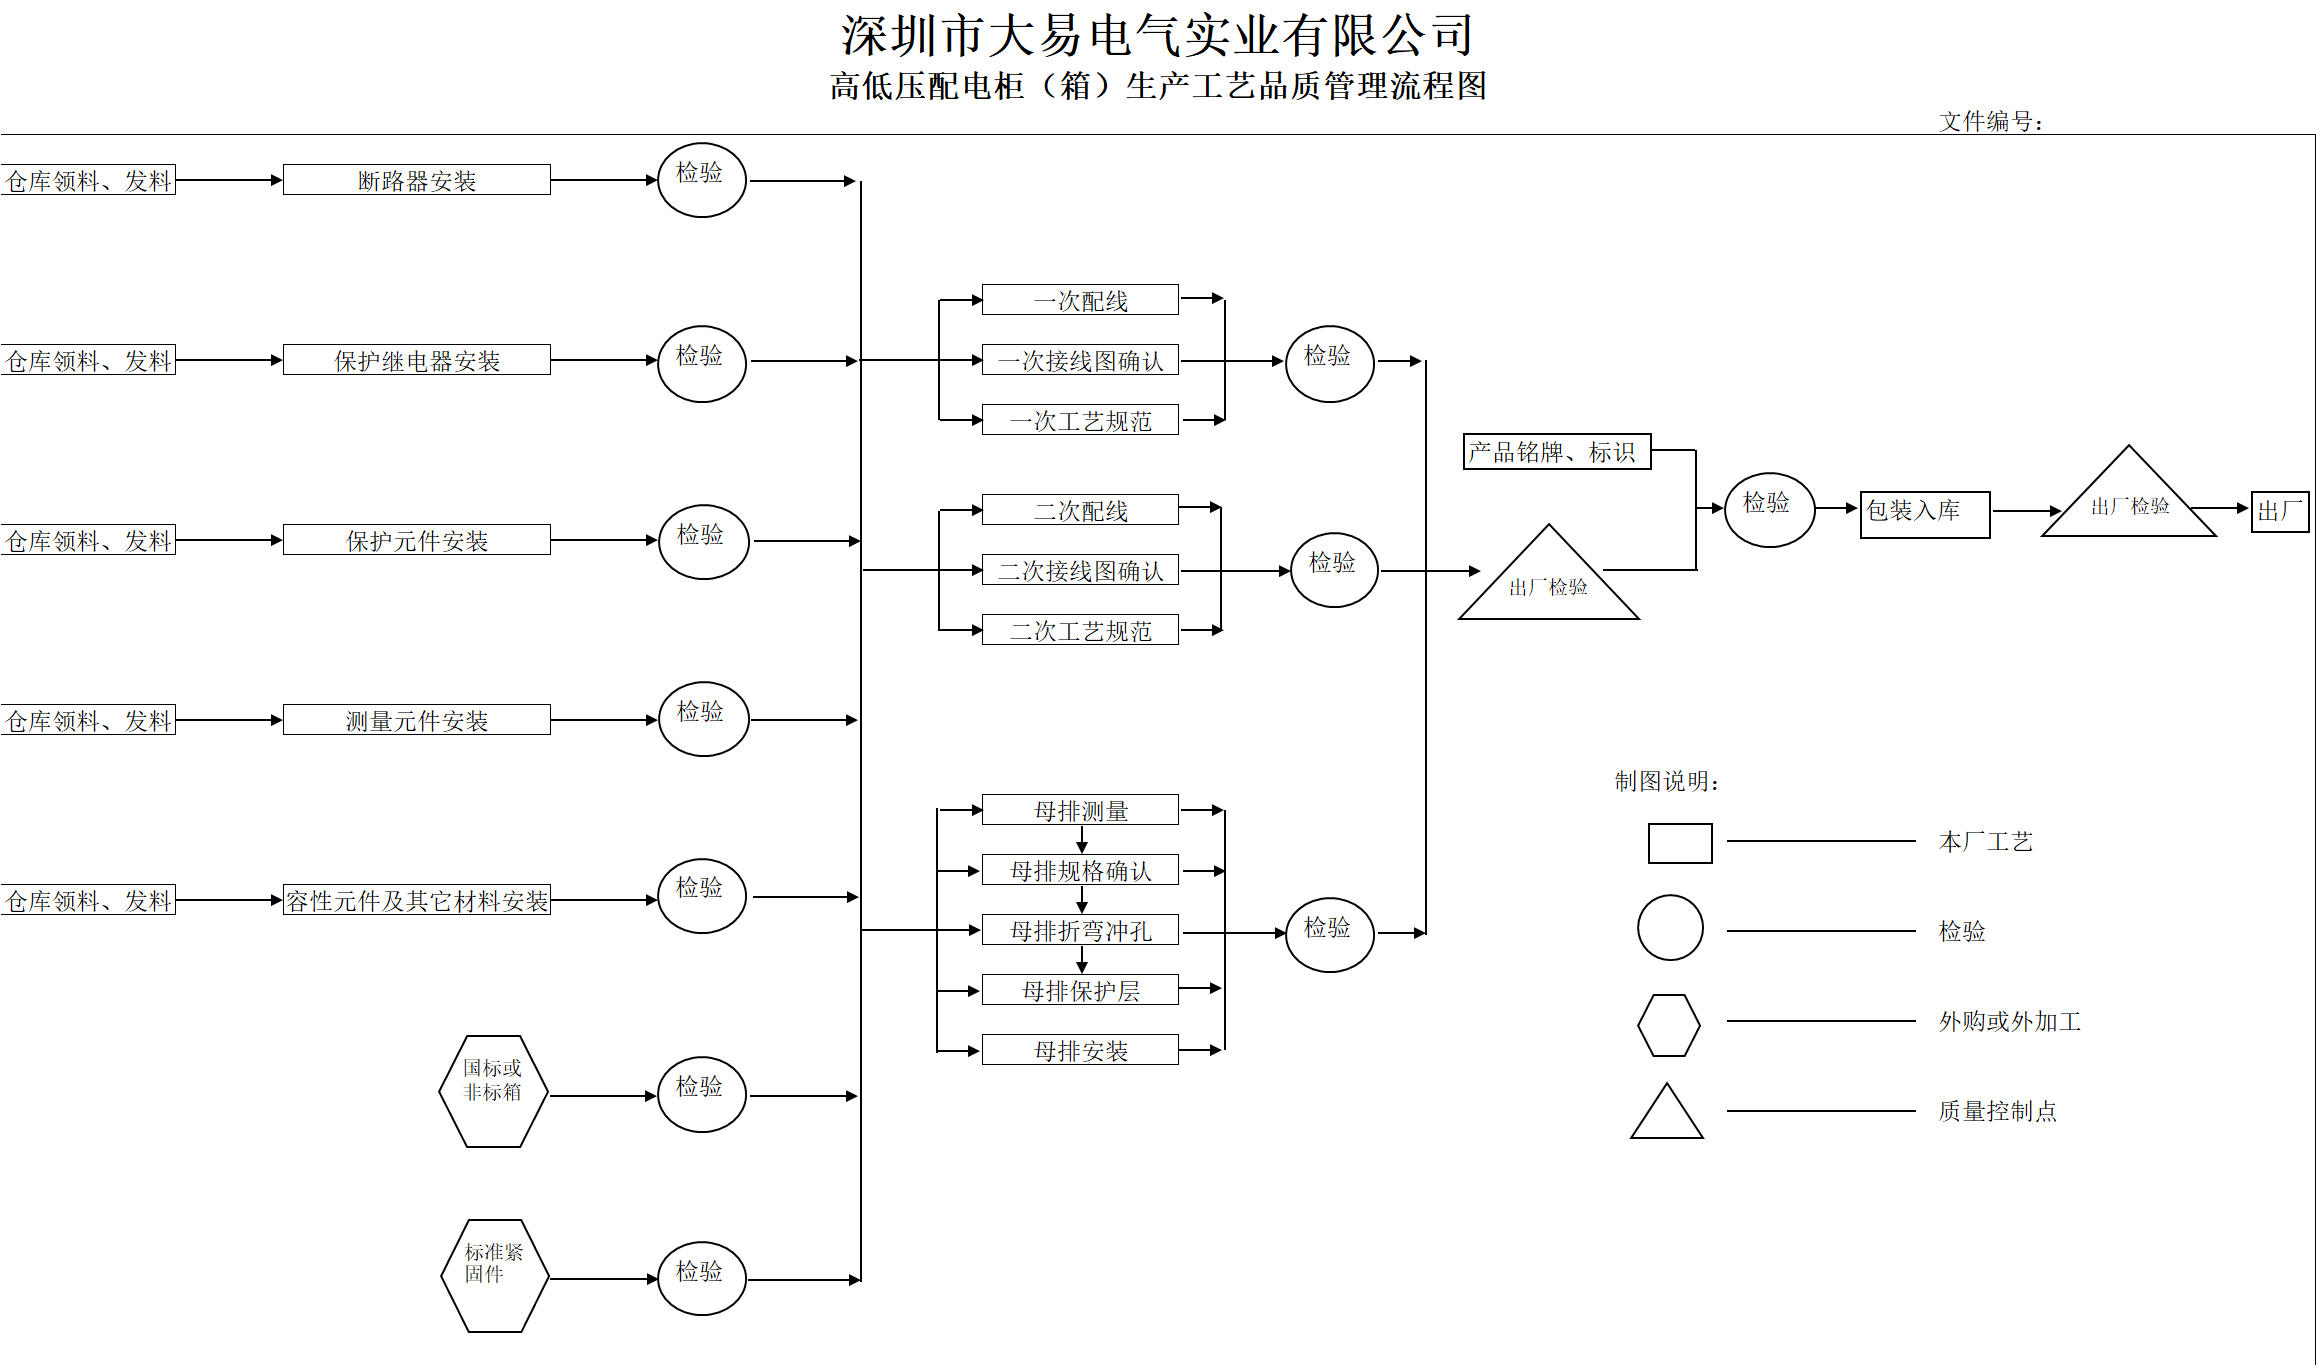 生产品质流程图中文版2020.01.07（大图）.png